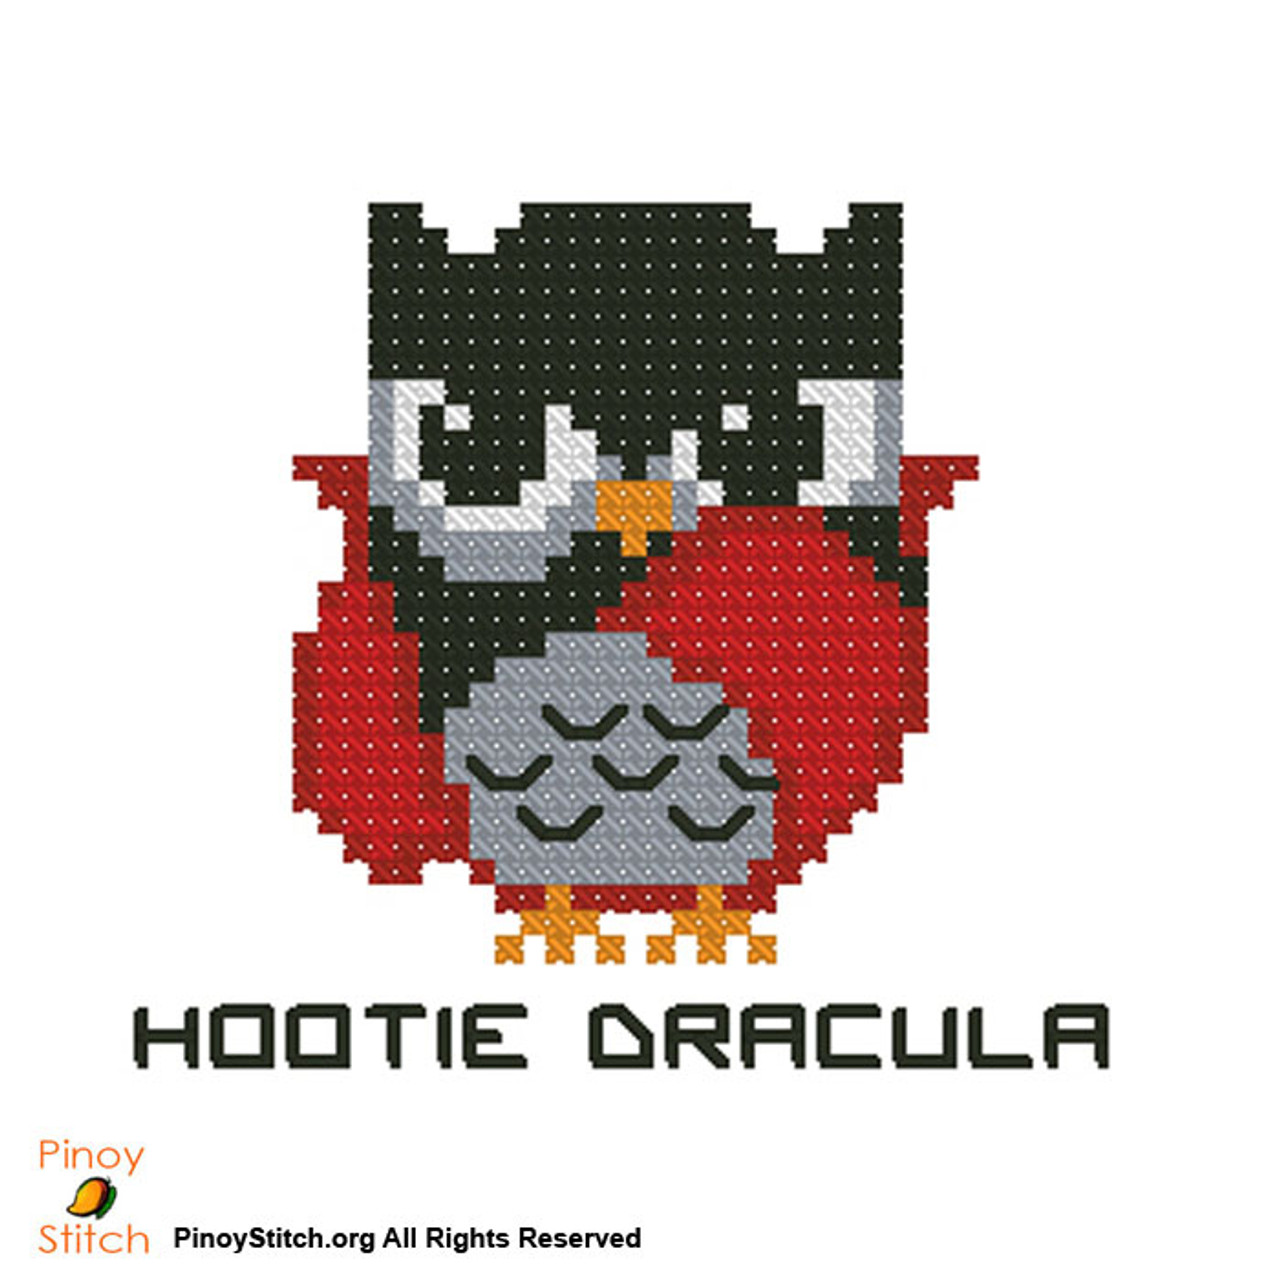 Hootie Dracula